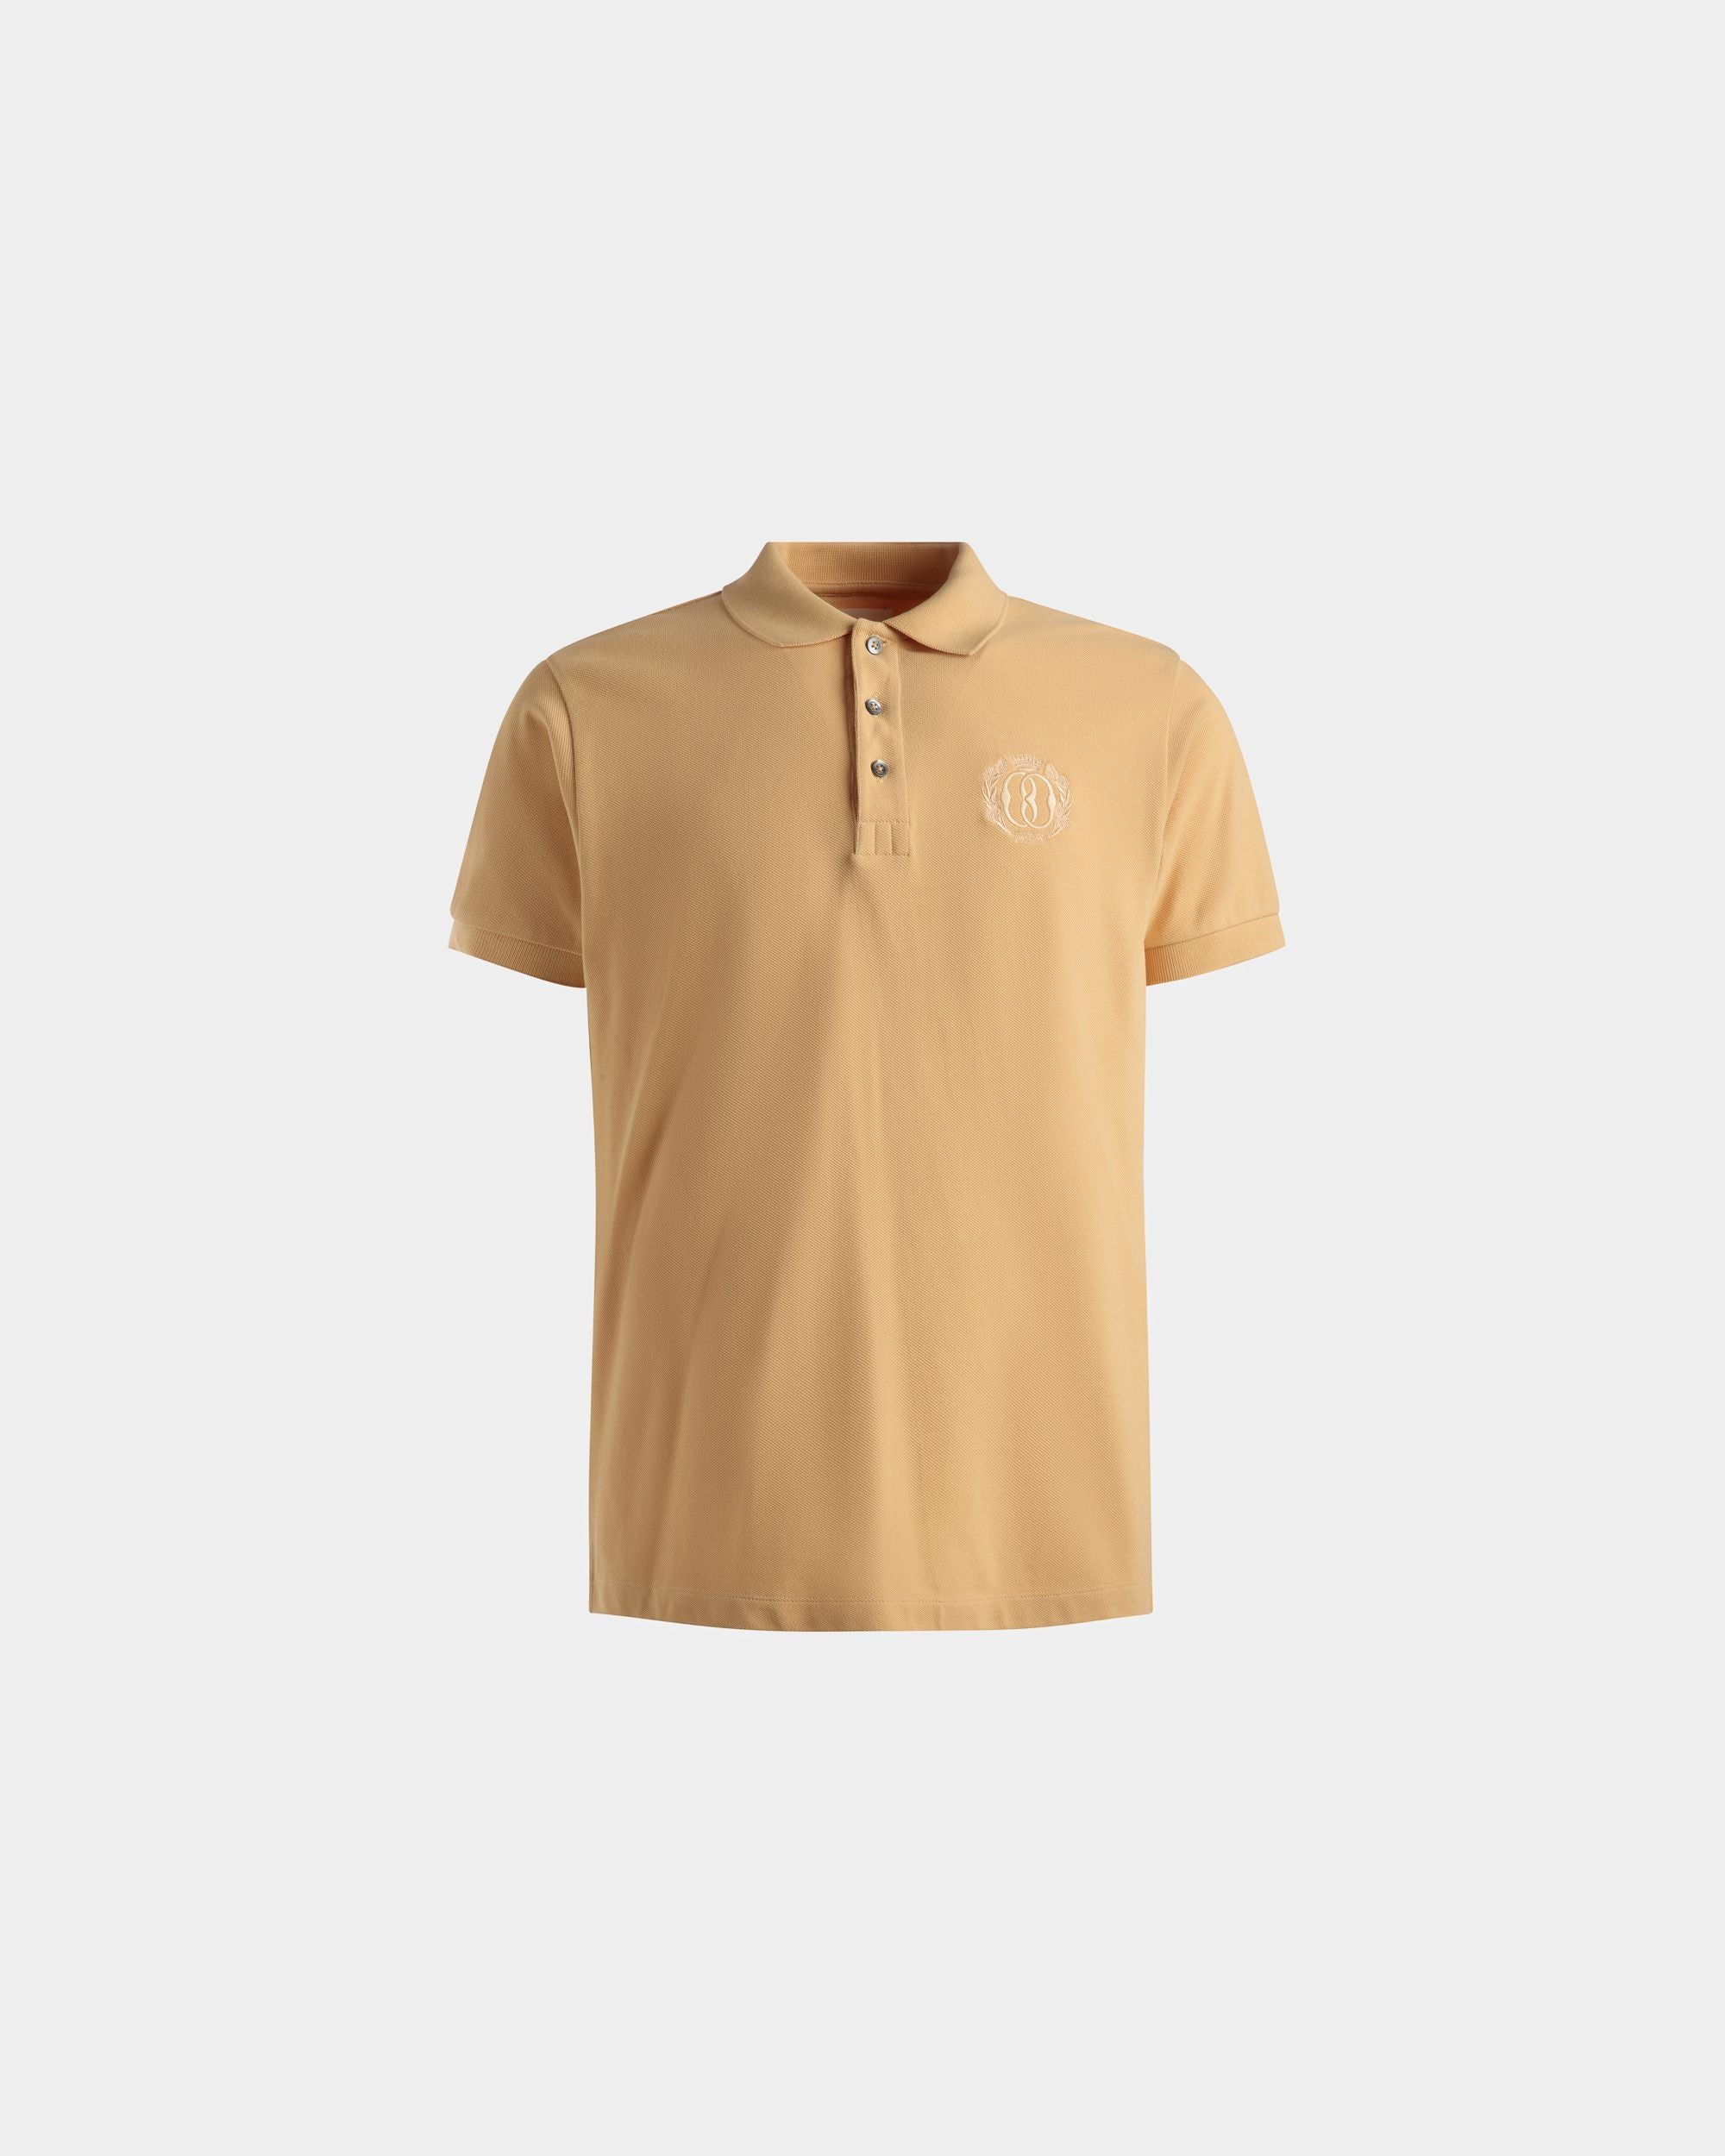 Emblem Poloshirt | Poloshirt für Herren | Cremefarbene Baumwolle | Bally | Still Life Vorderseite